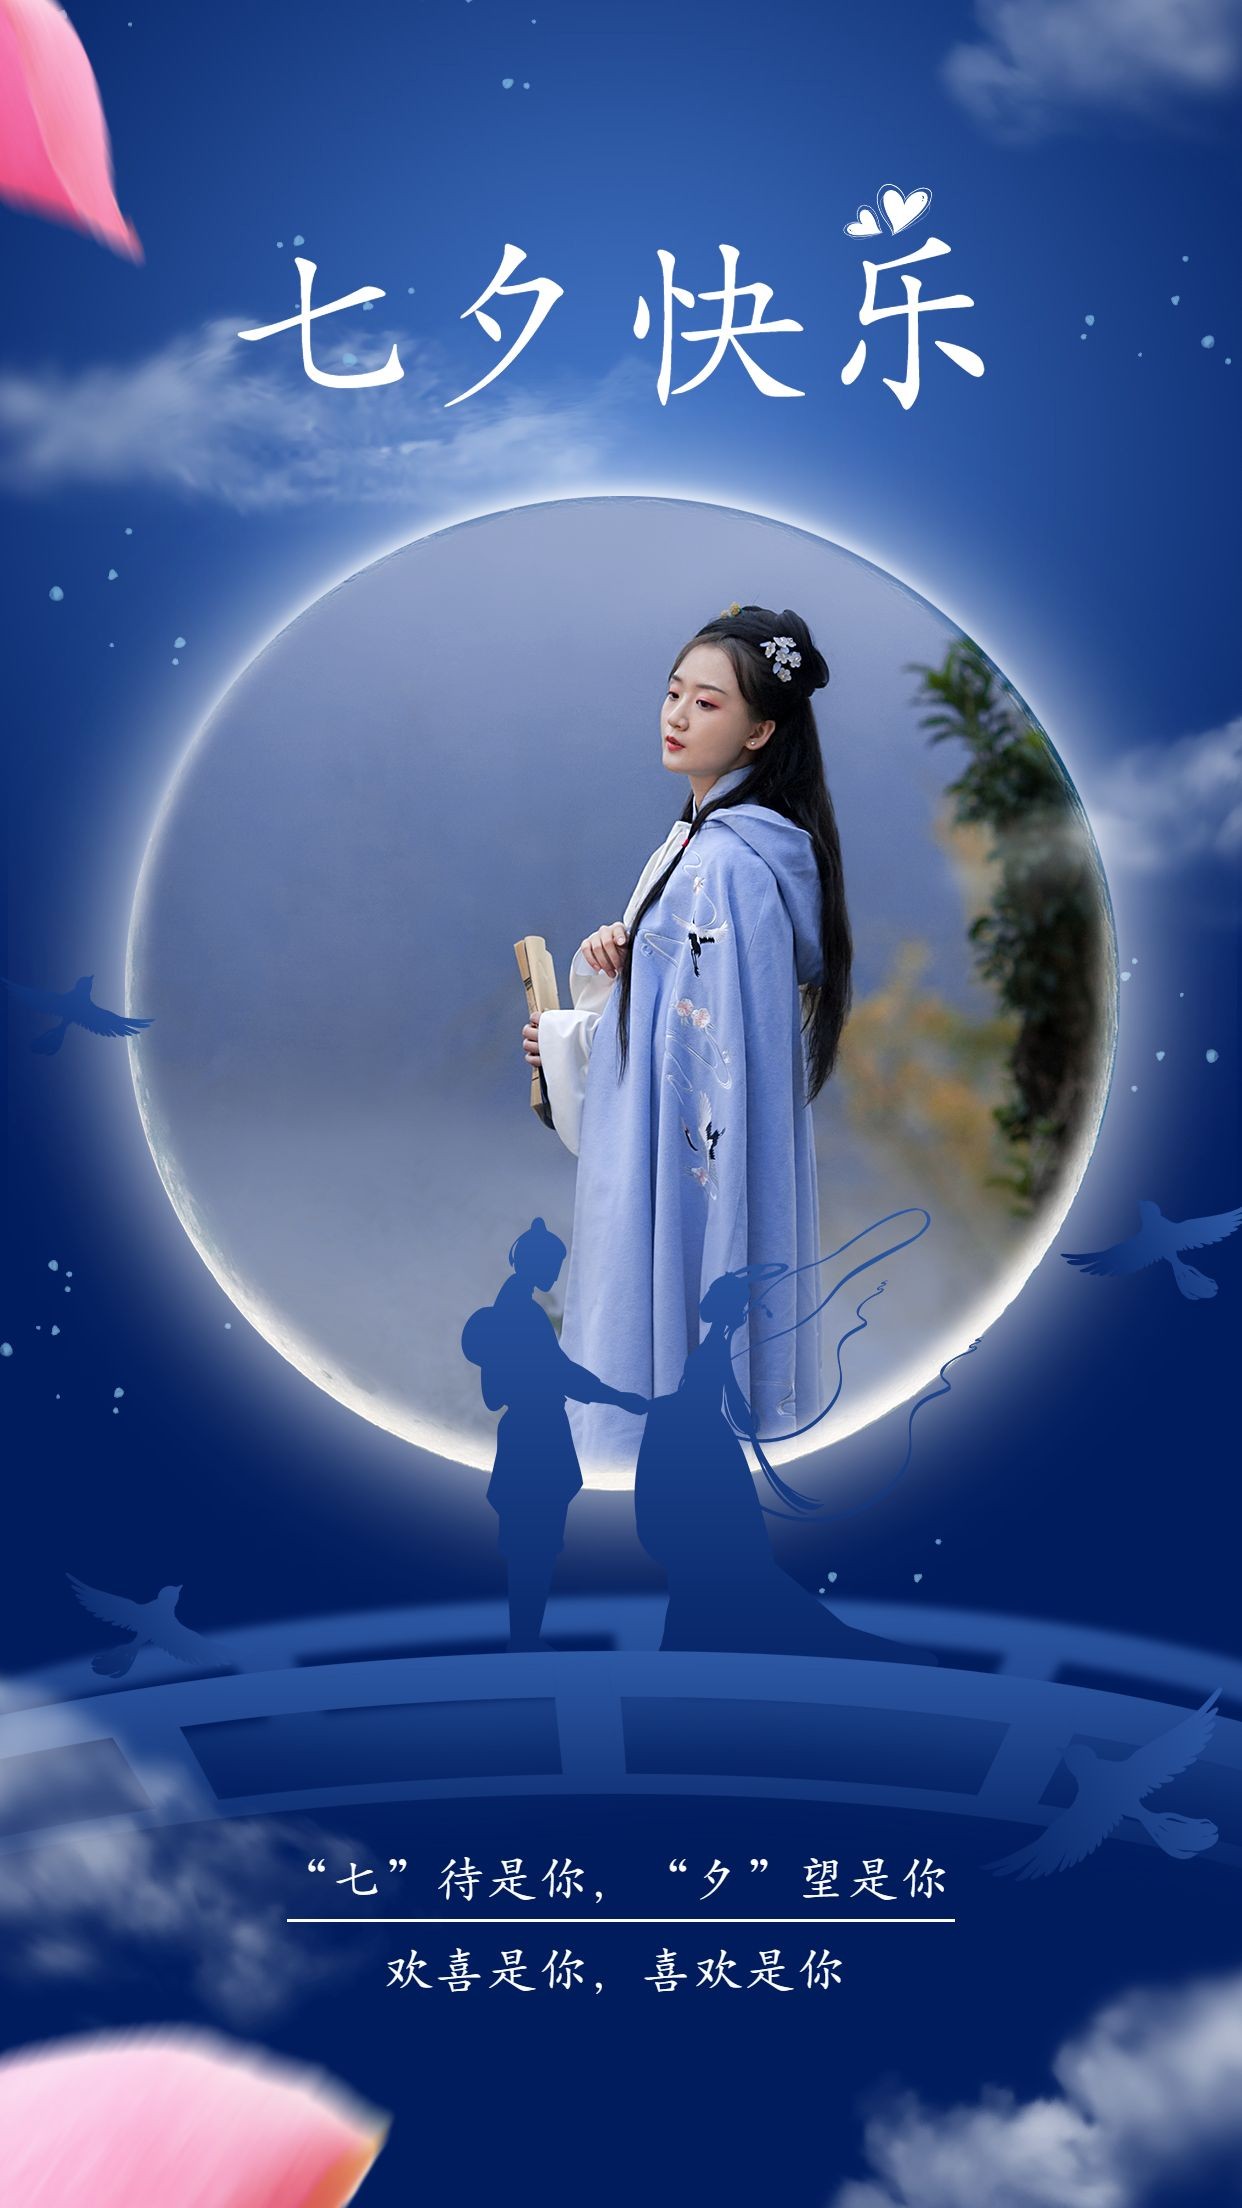 七夕月亮晒照送祝福单图框女性